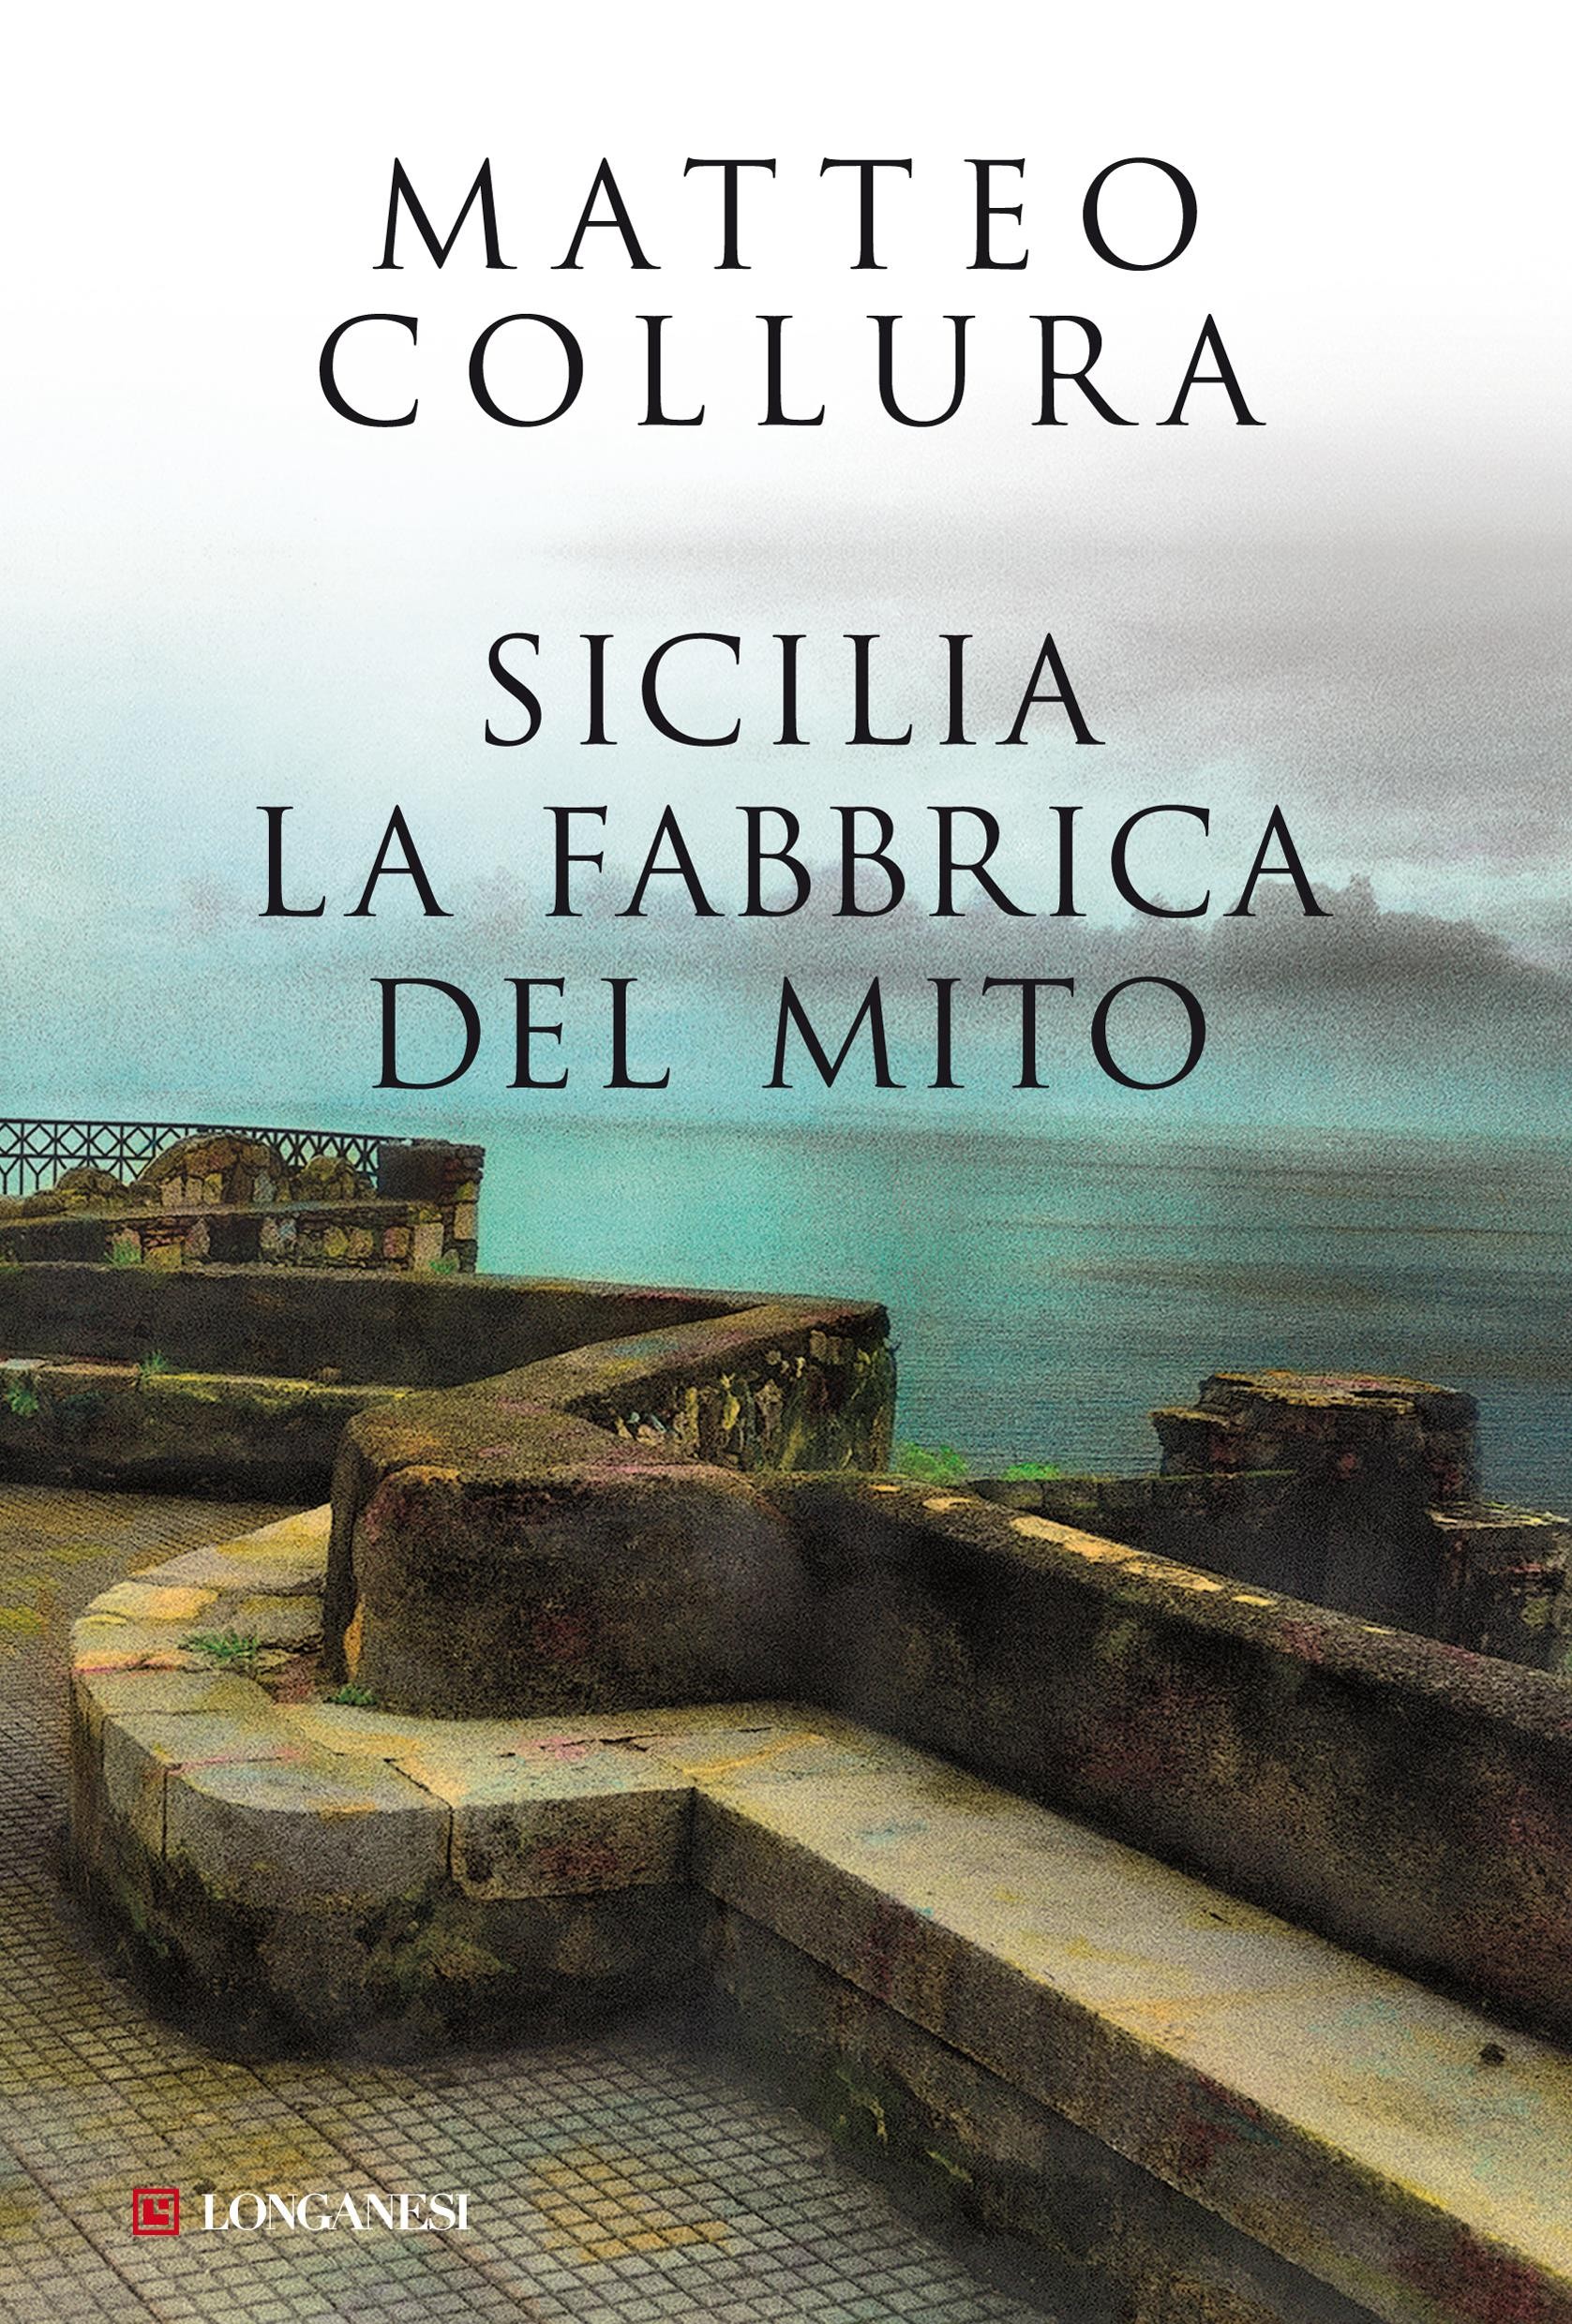 Sicilia - Librerie.coop